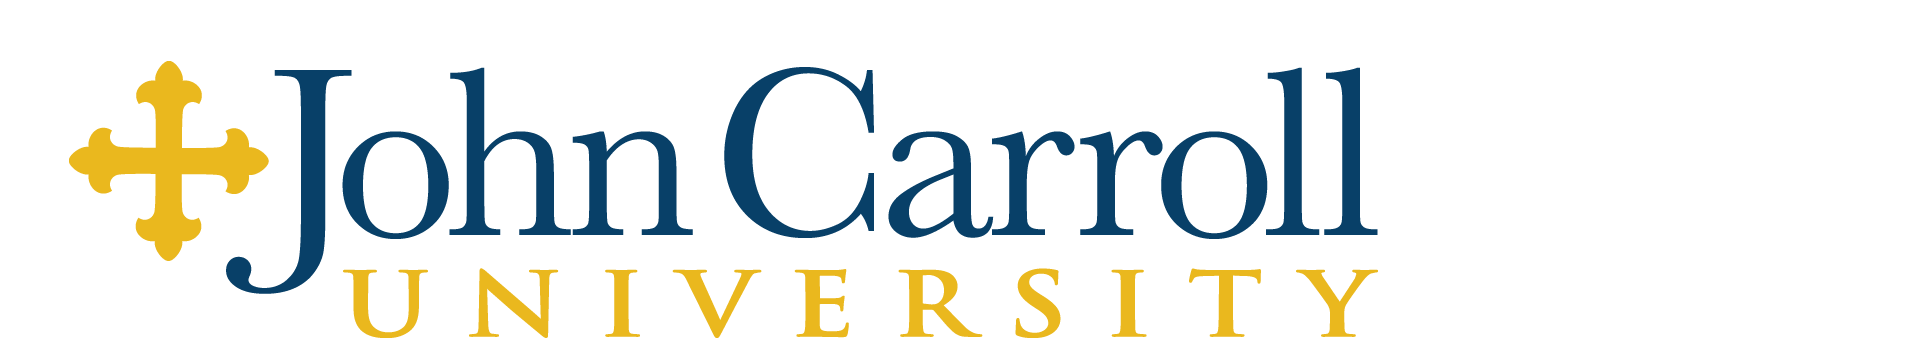 John carroll university Logos